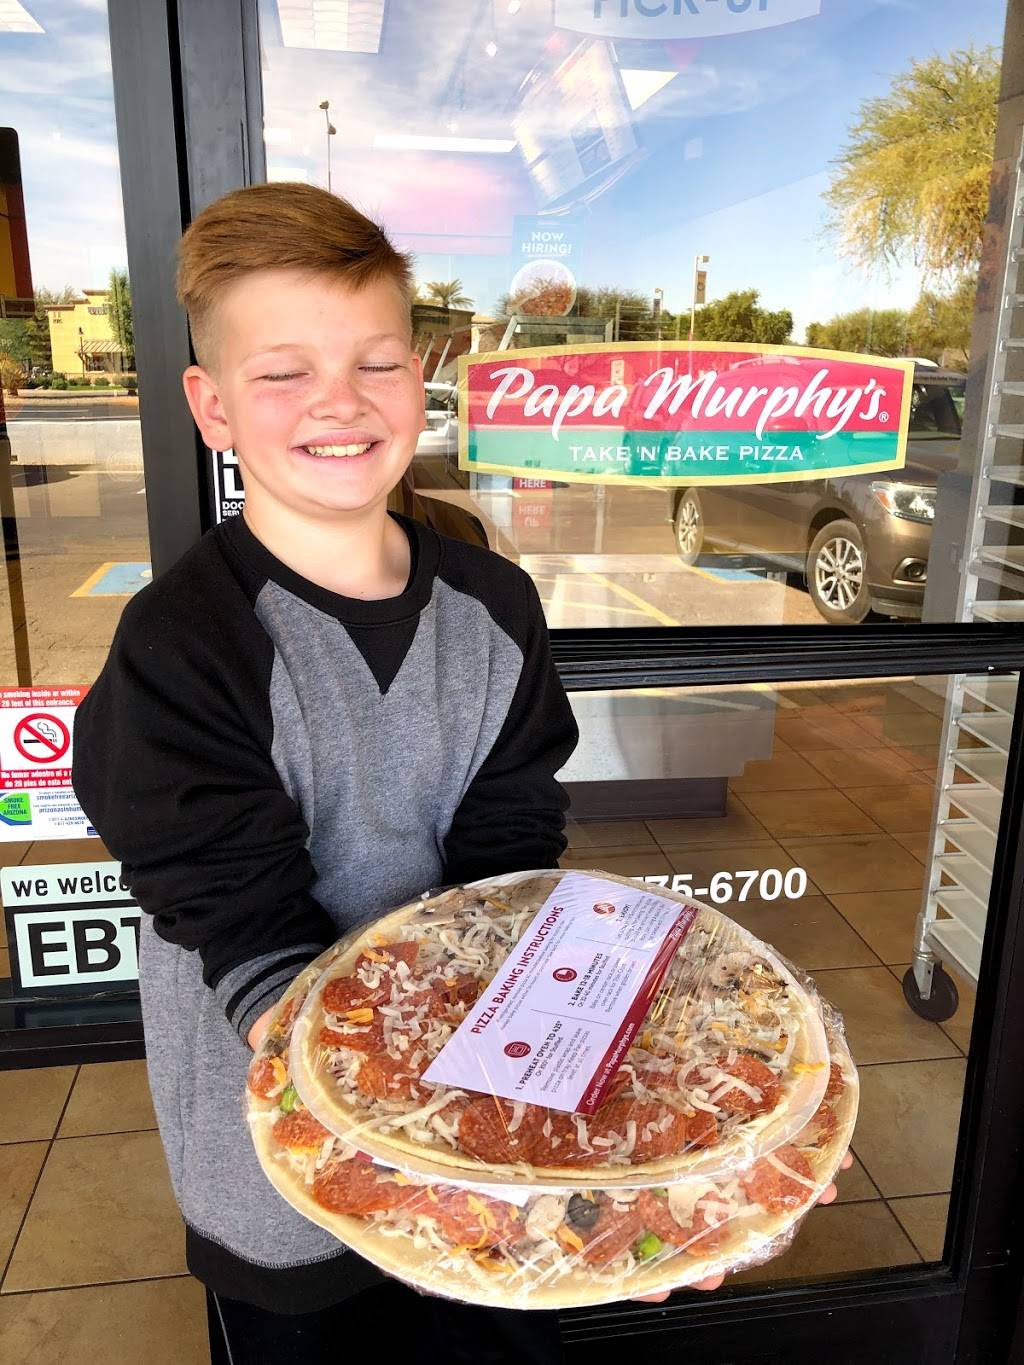 Papa Murphys | Take N Bake Pizza | 2820 S Alma School Rd, Chandler, AZ 85286 | Phone: (480) 775-6700